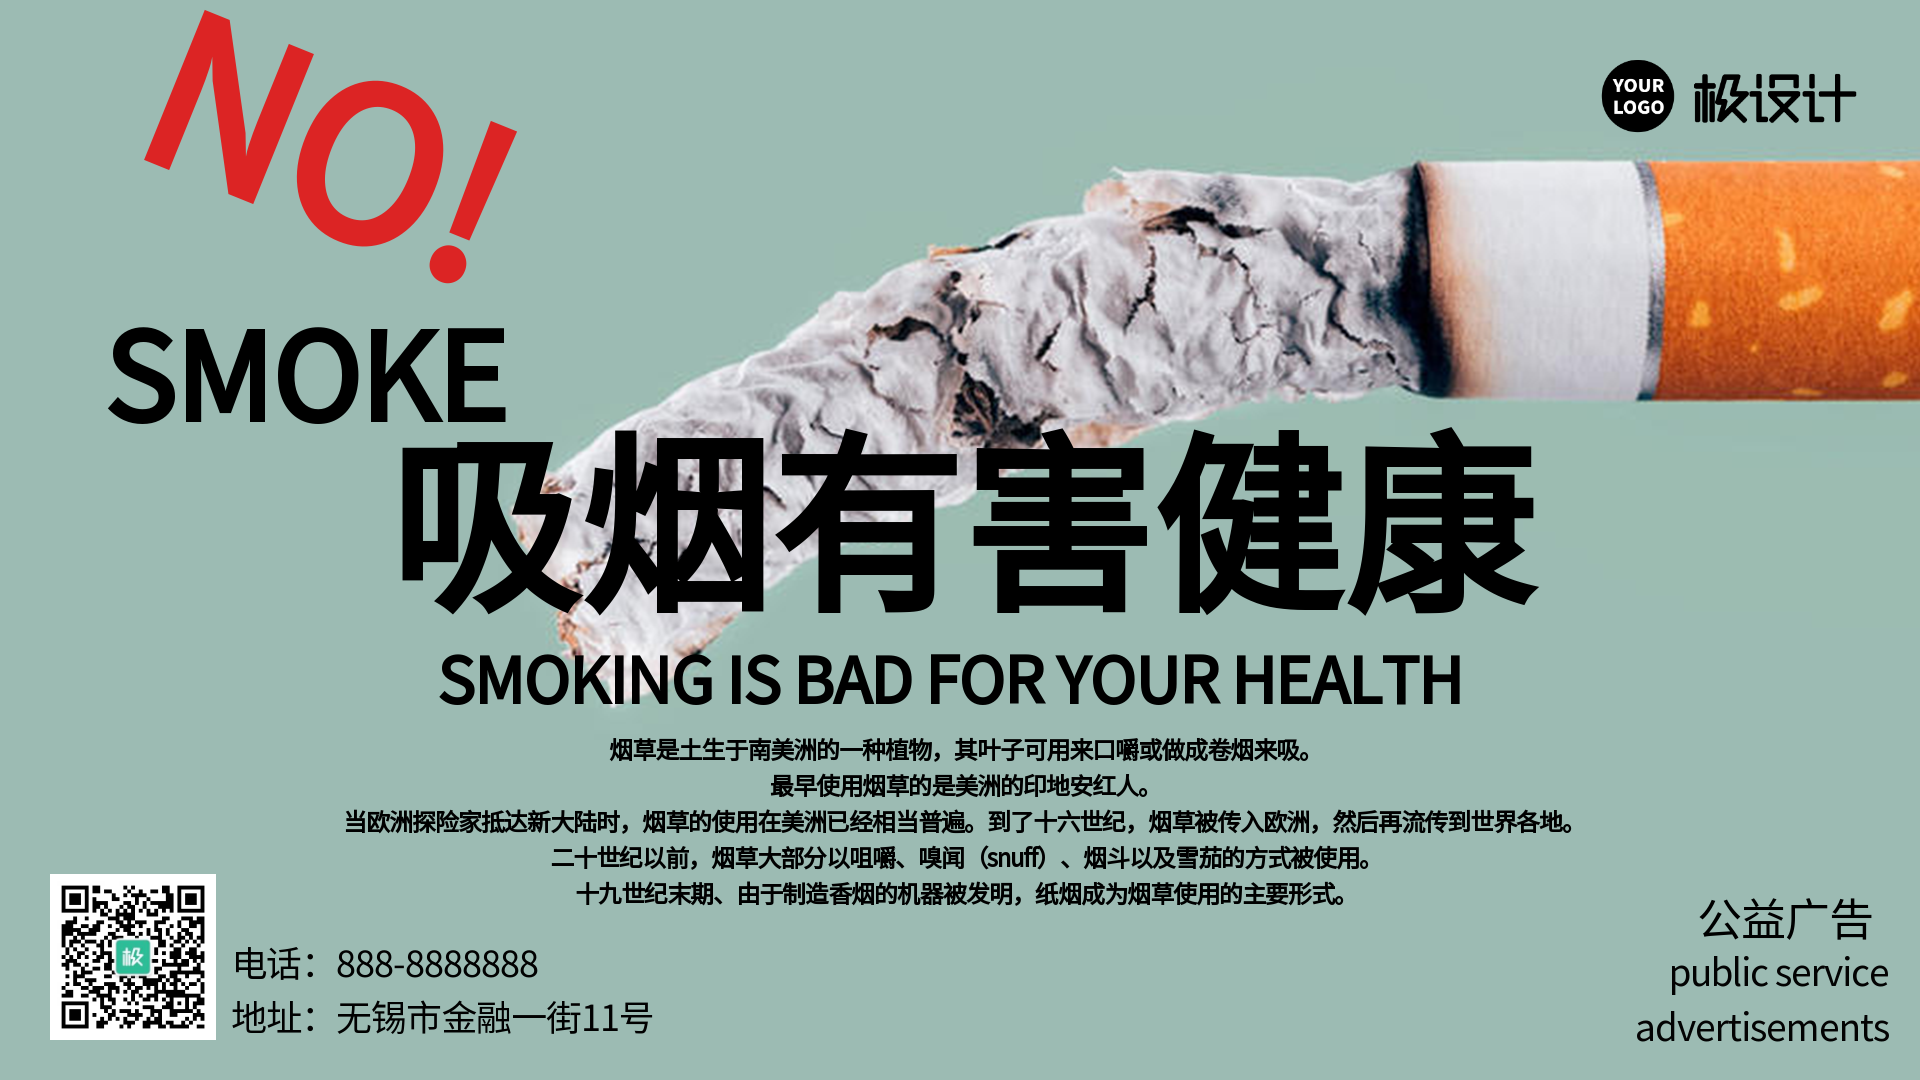 吸烟相关的公益广告-横